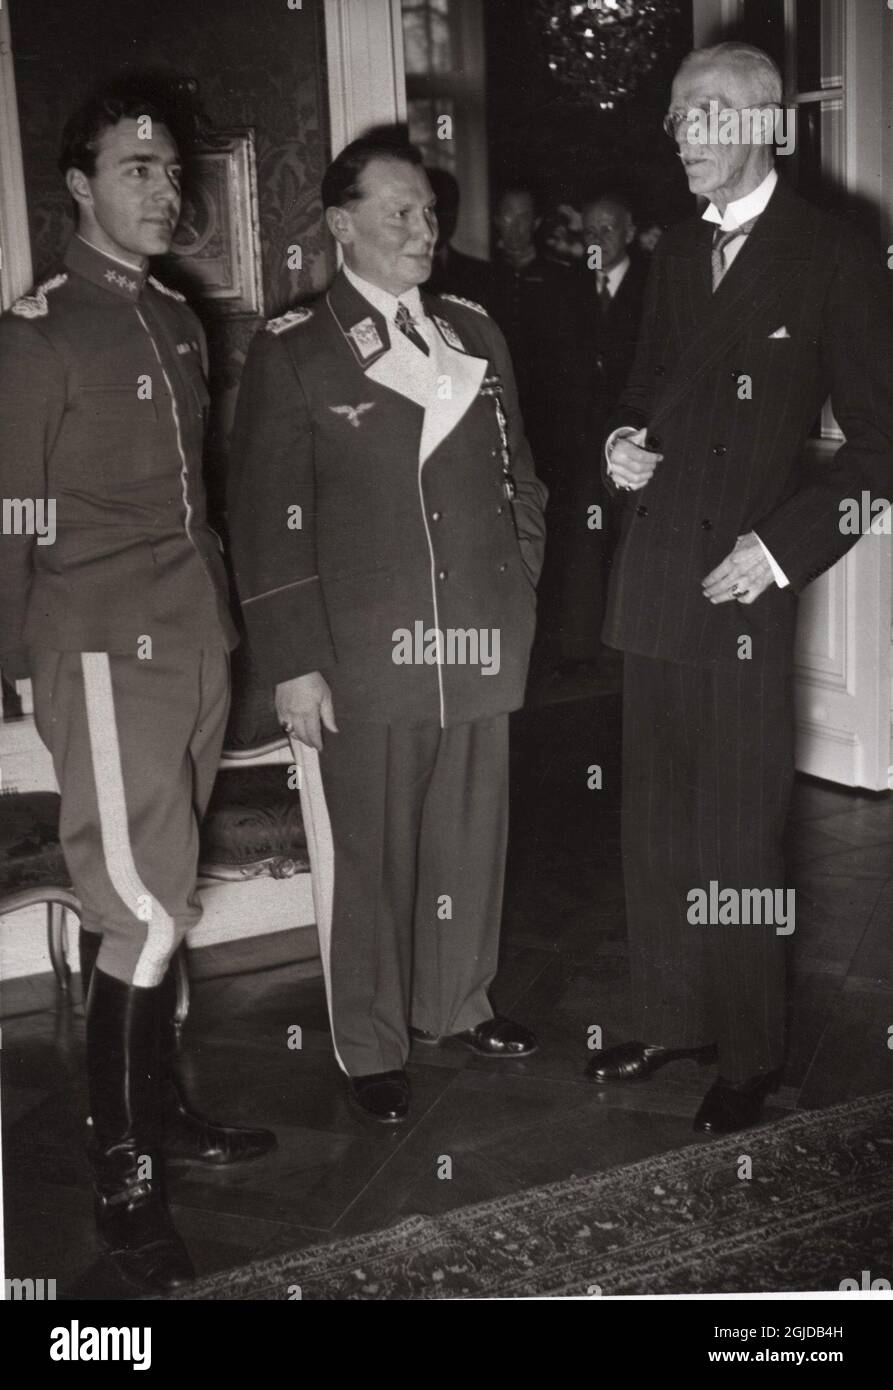 Le roi Gustaf V (à droite) décerne la Grande Croix de l'ordre de l'épée au maréchal allemand Hermann Goring, ainsi qu'au prince héritier suédois Gustav Adolf (à gauche) à Berlin, en Allemagne, le 02 février 1934. Photo : code PRB / TT 194 Banque D'Images